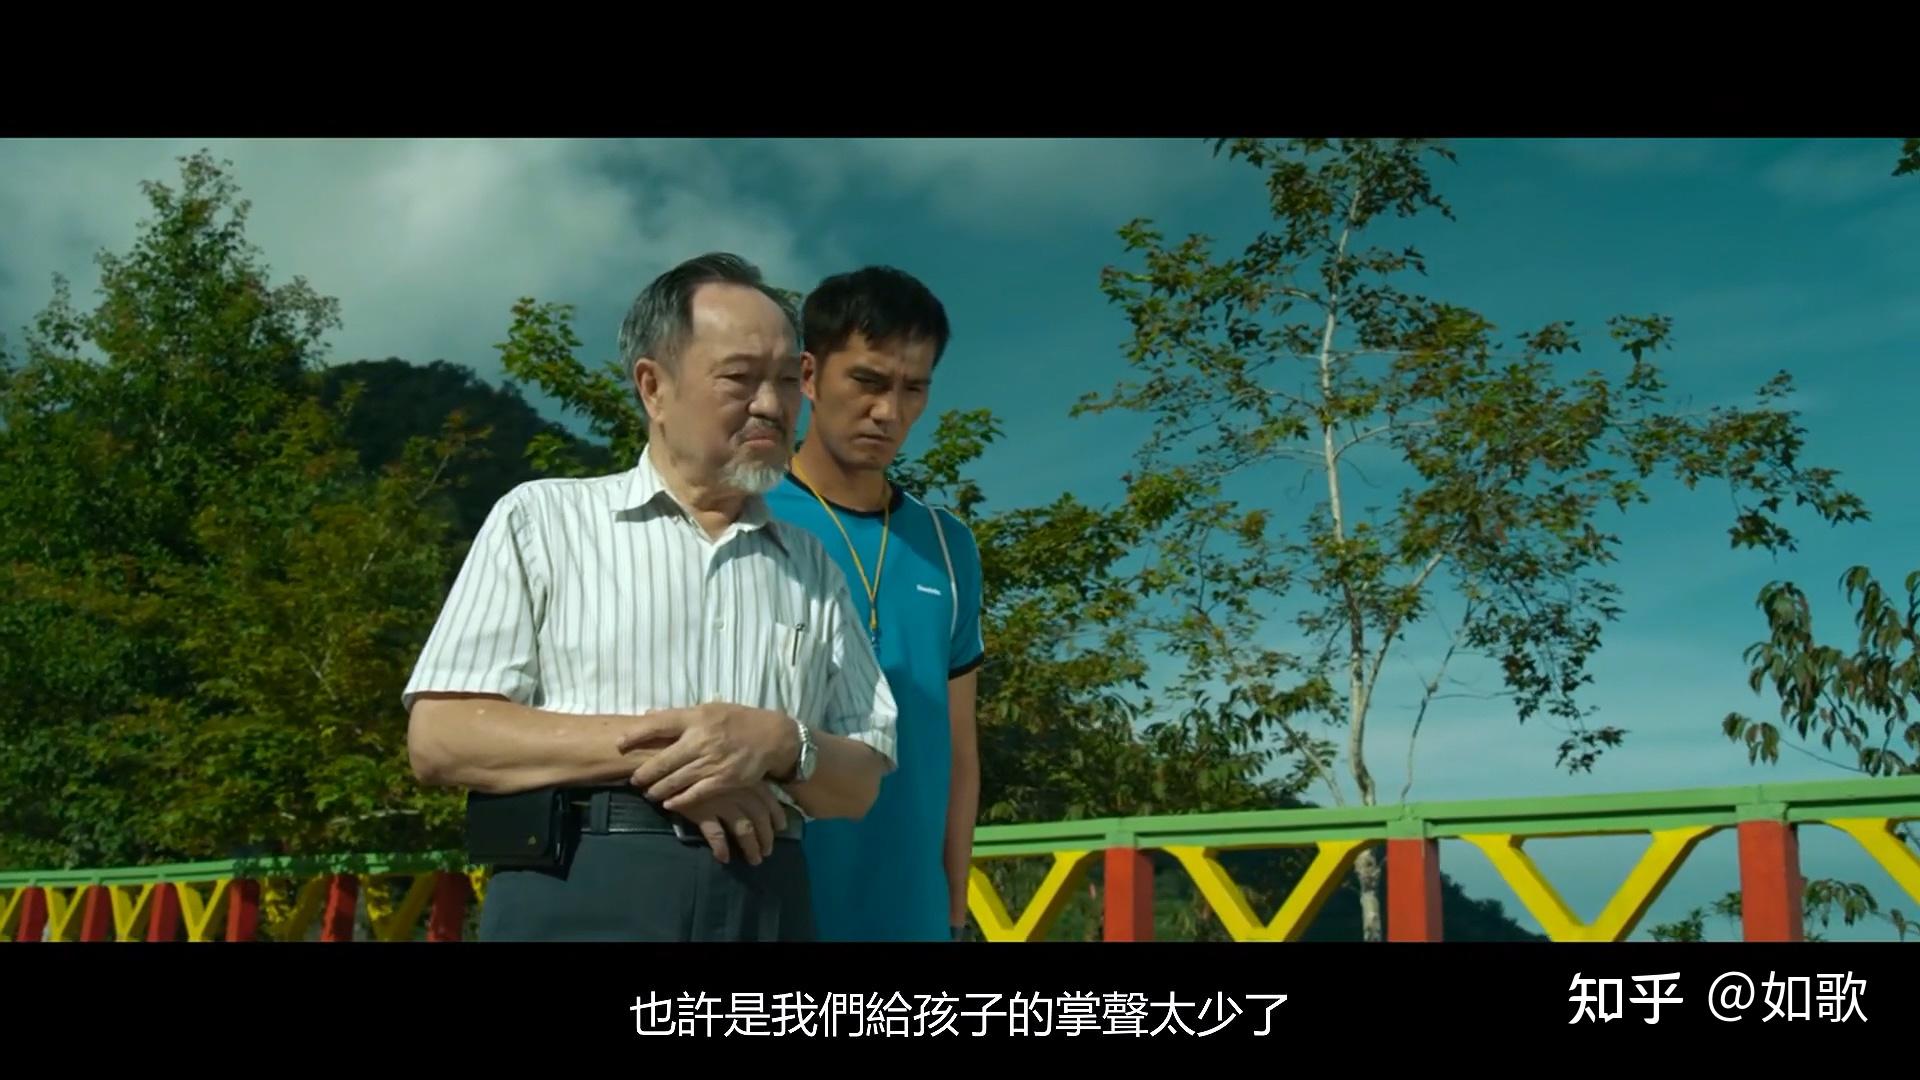 台湾电影听见歌再唱是一部改编自真人真事的励志影片